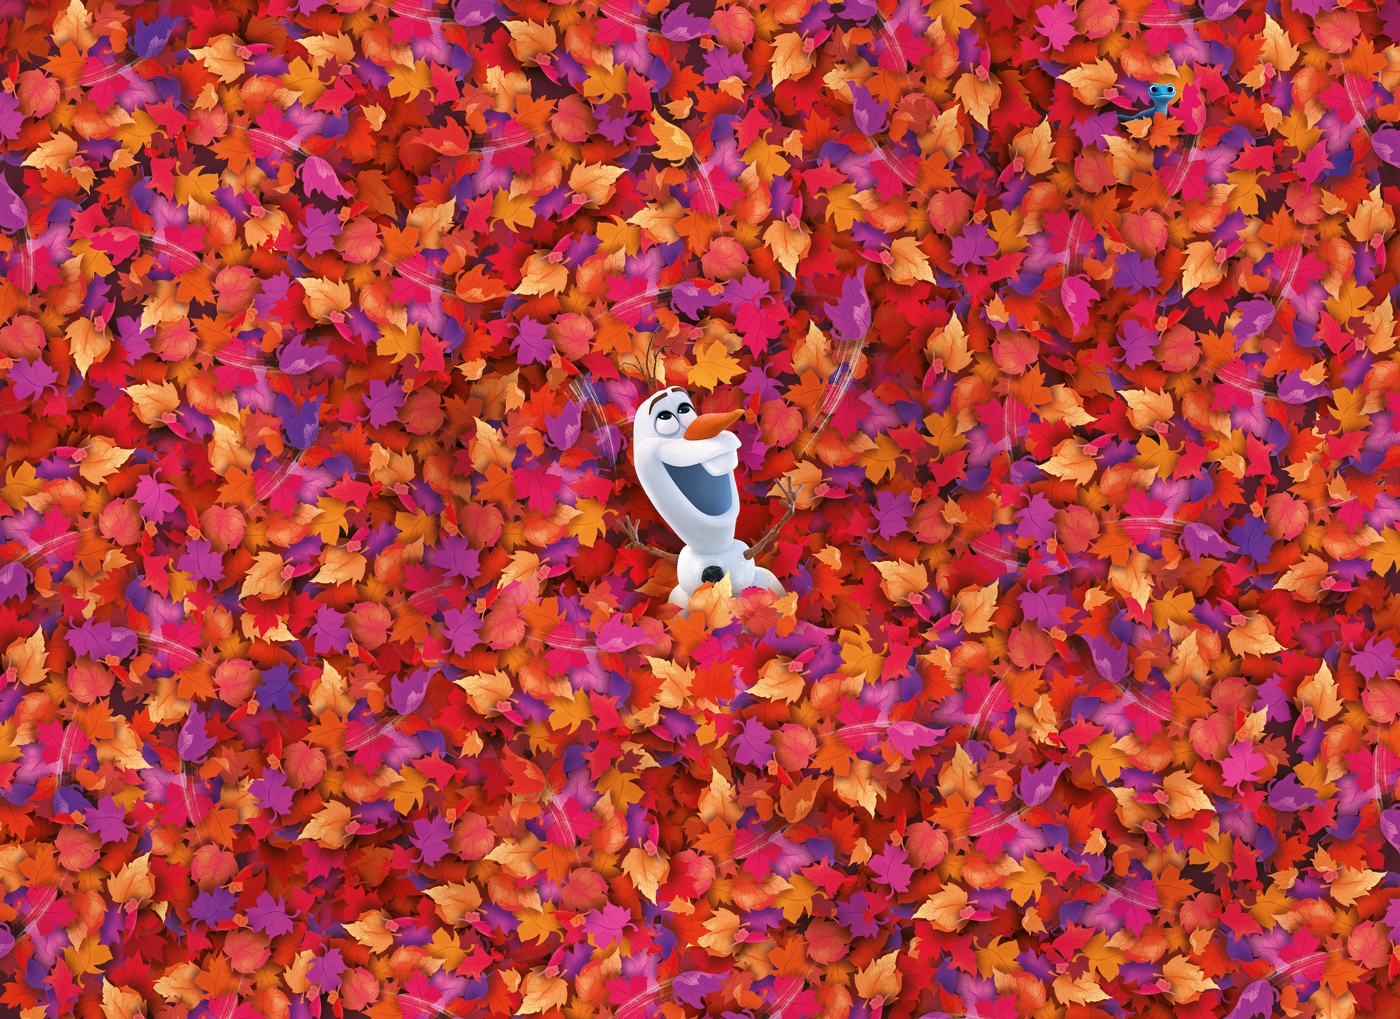 Clementoni Impossible Puzzle Olaf Frozen 2 Disney 1000 Pieces Jigsaw Puzzle